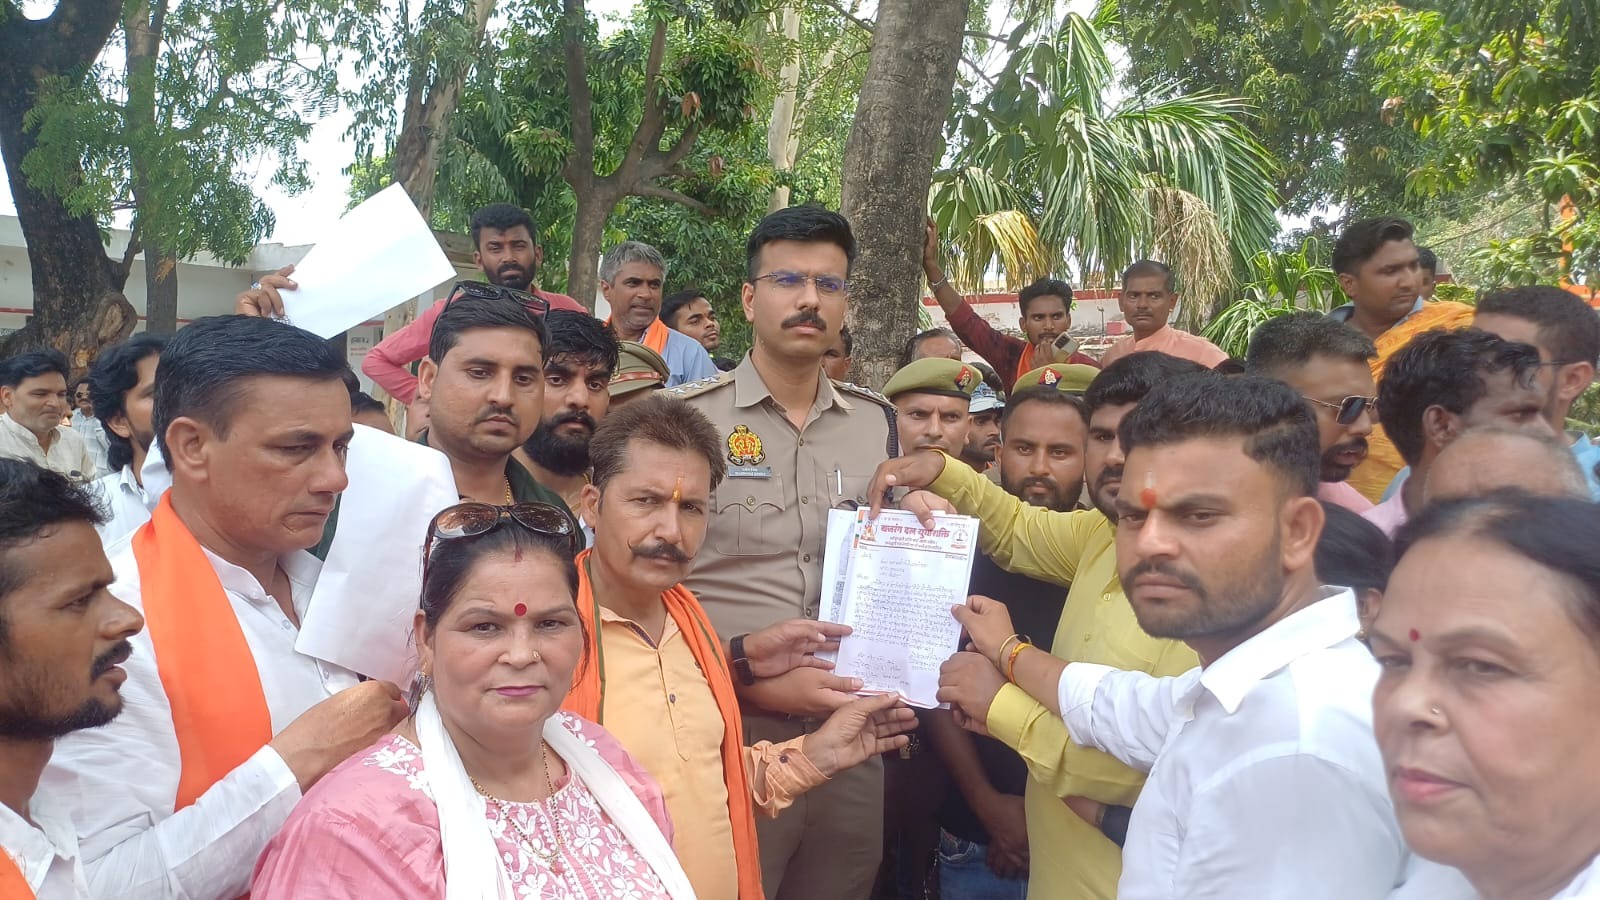 बिजनौर: गैर समुदाय के युवक से शादी करने पर हिंदू संगठनों में रोष, थाने में हंगामा